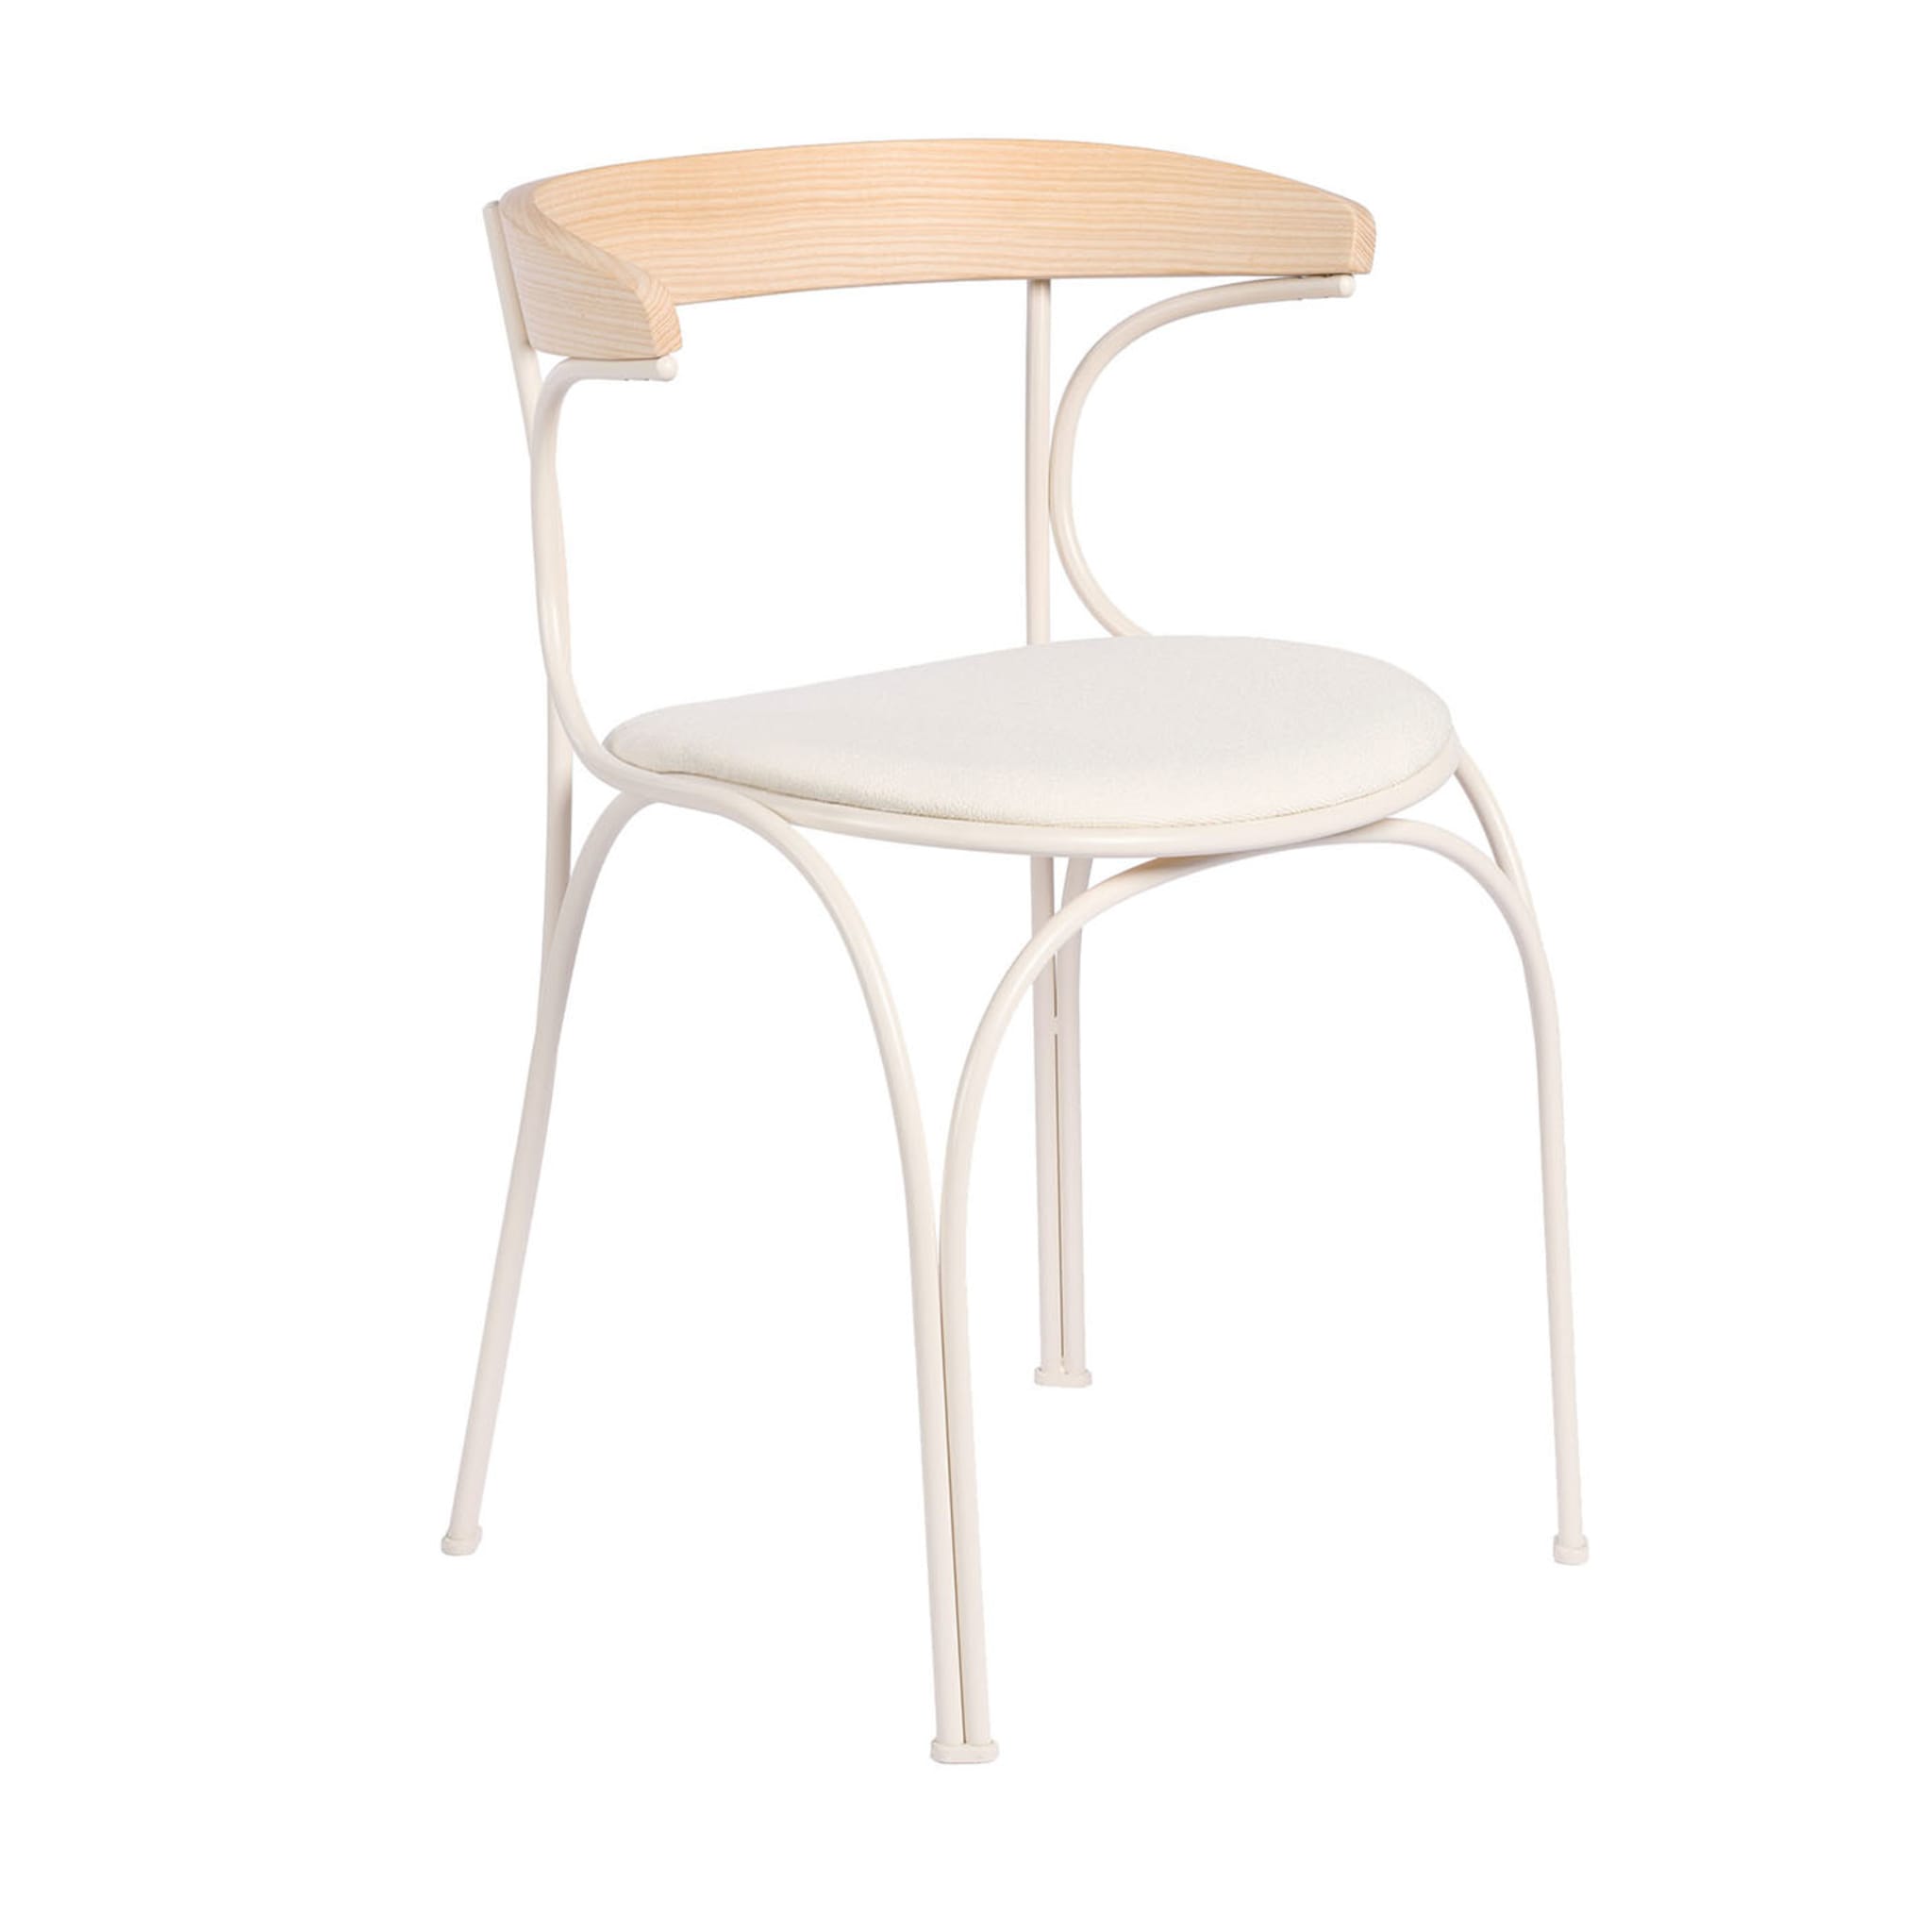 Ample White Chair by Nichetto Studio - Vue principale